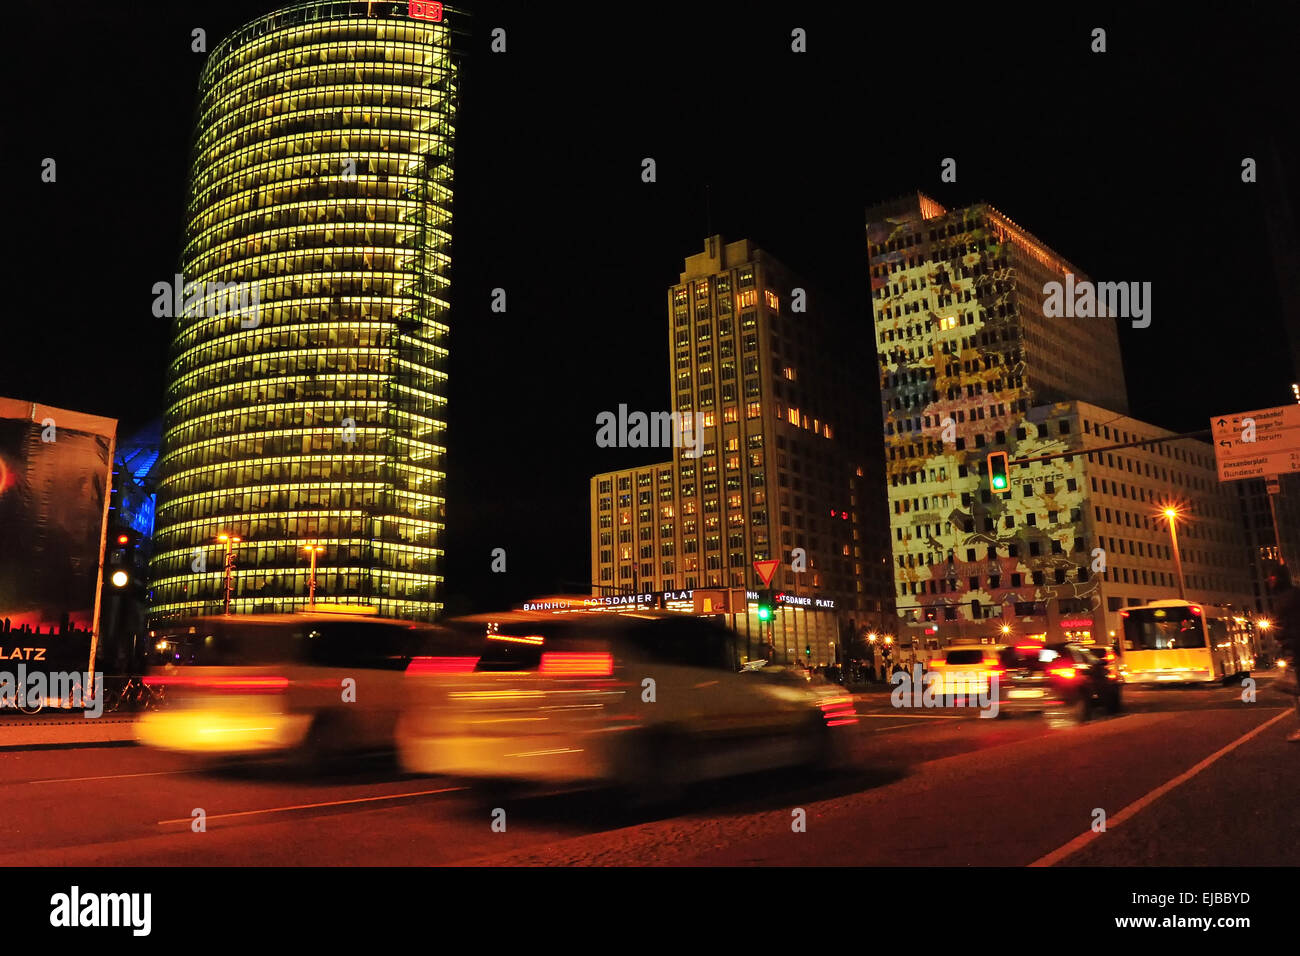 Capital Berlin Germany at night Stock Photo